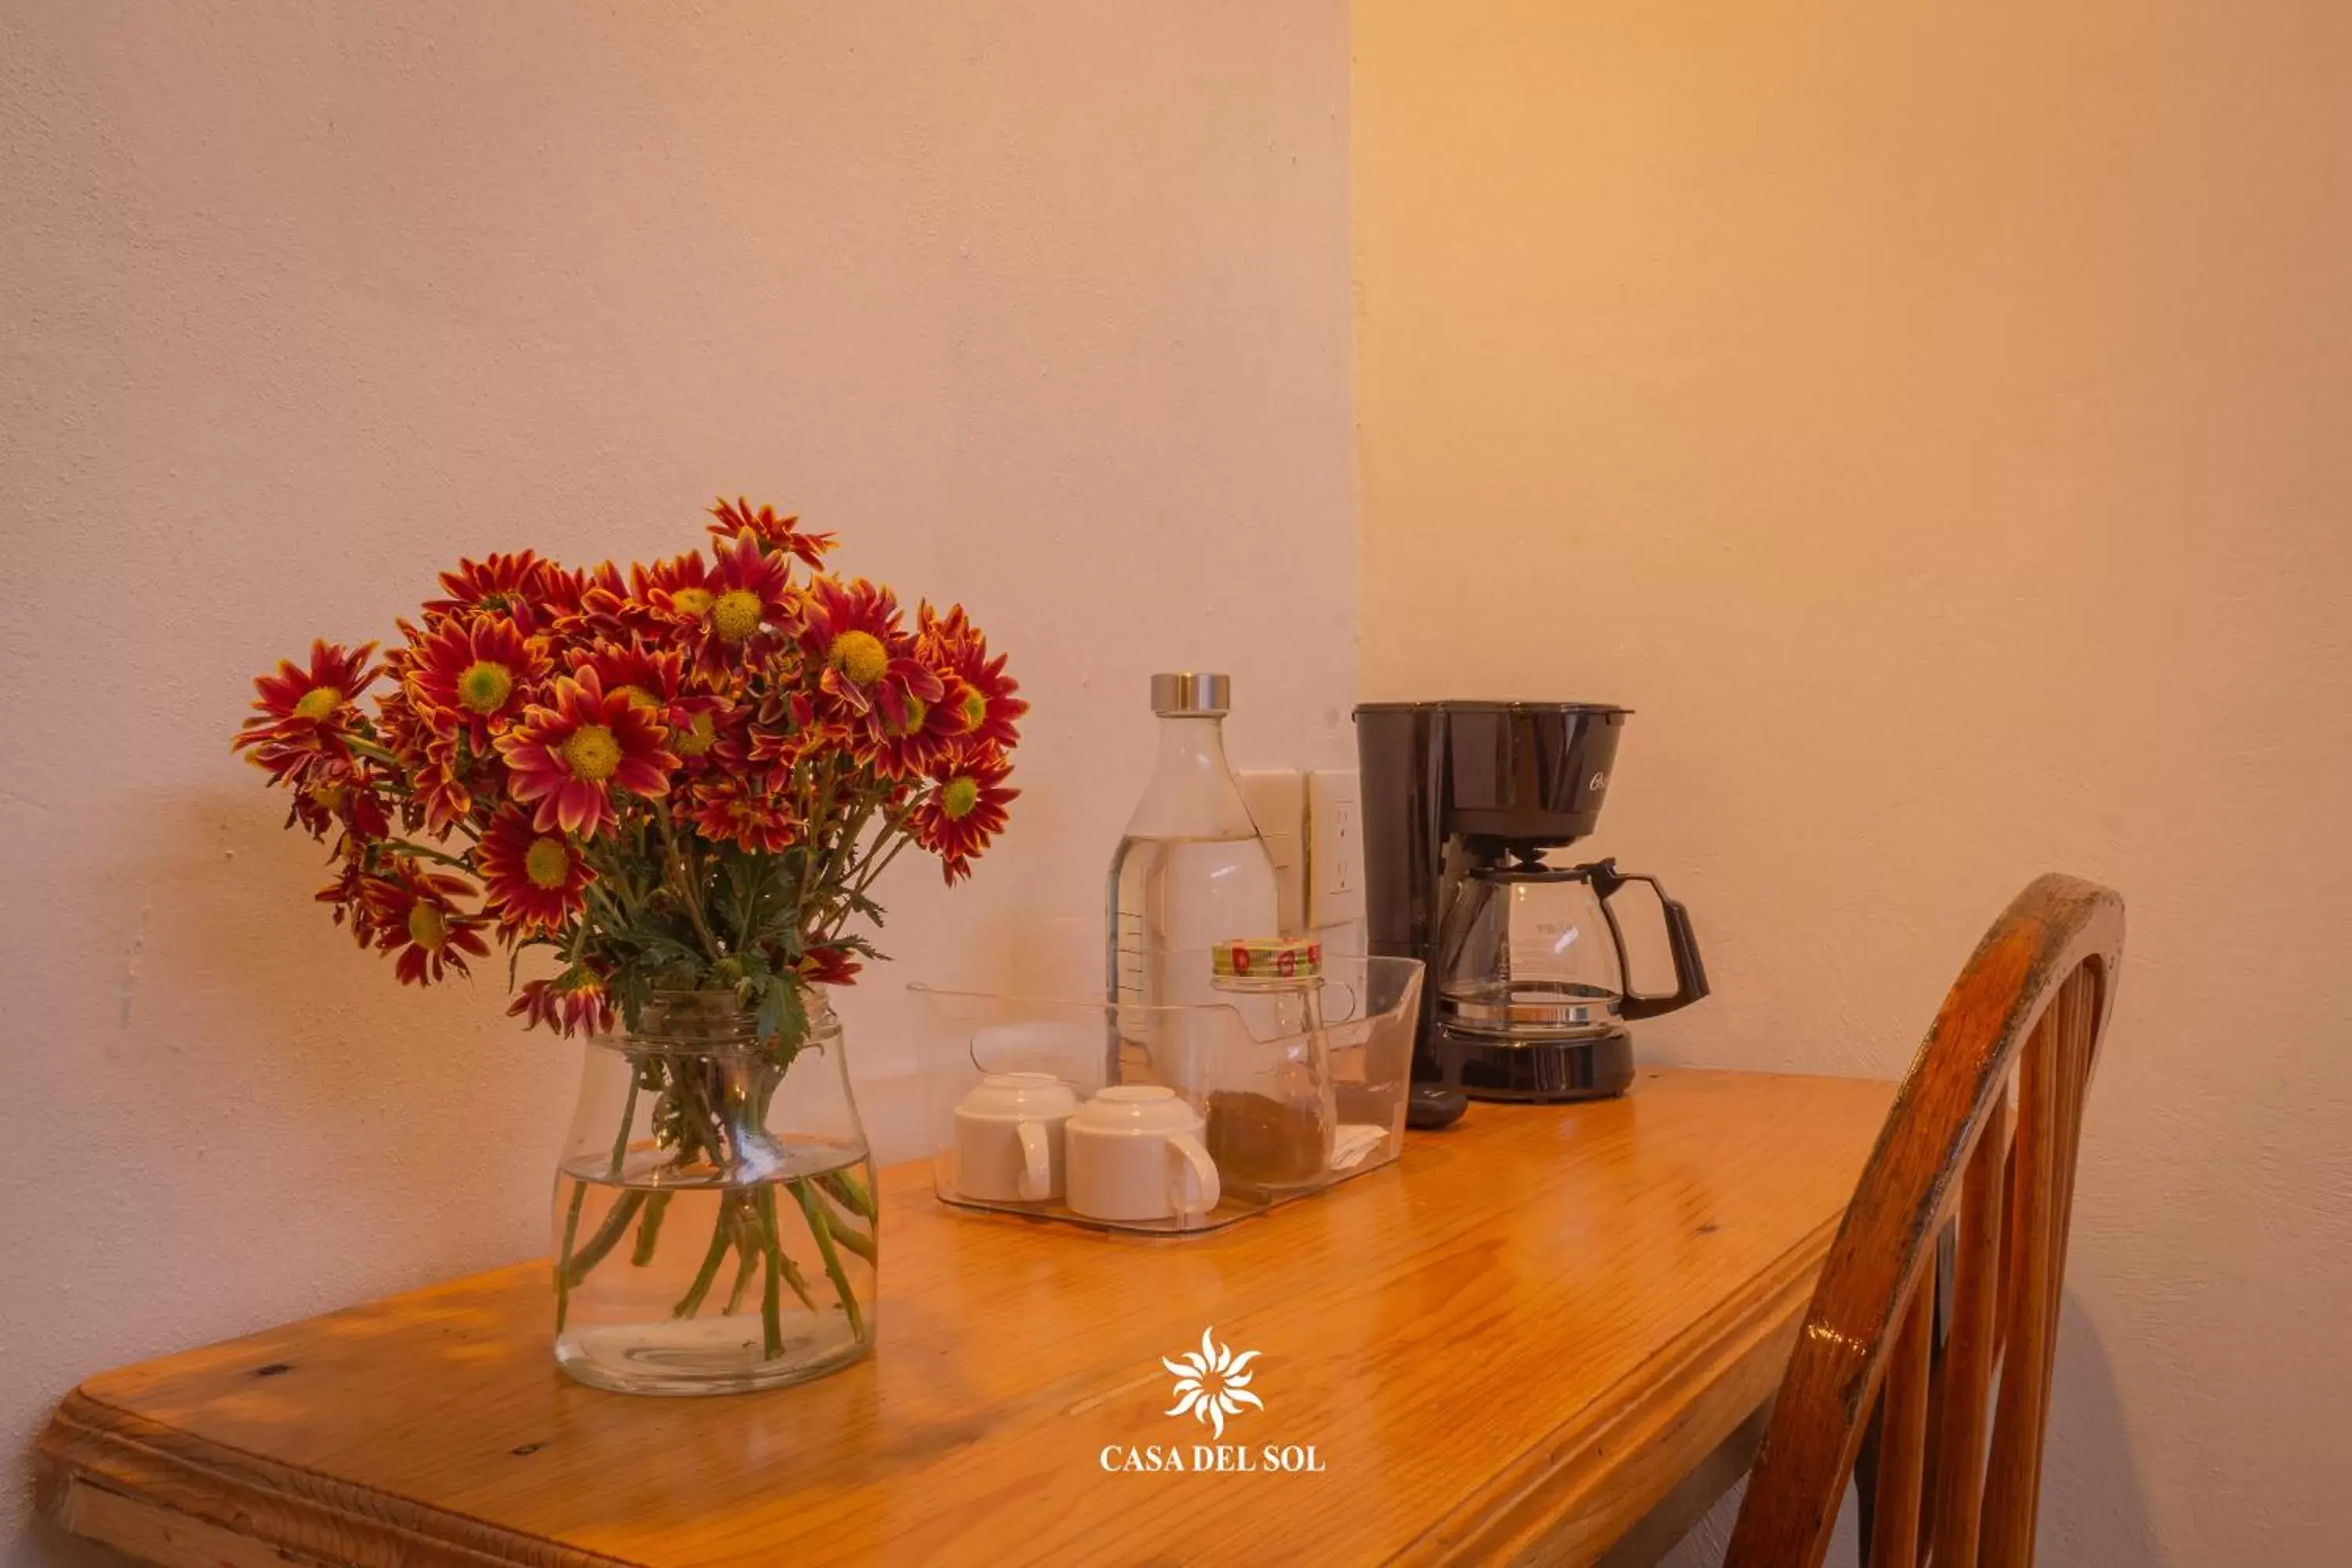 Coffee/tea facilities, Dining Area in Hotel Casa del Sol